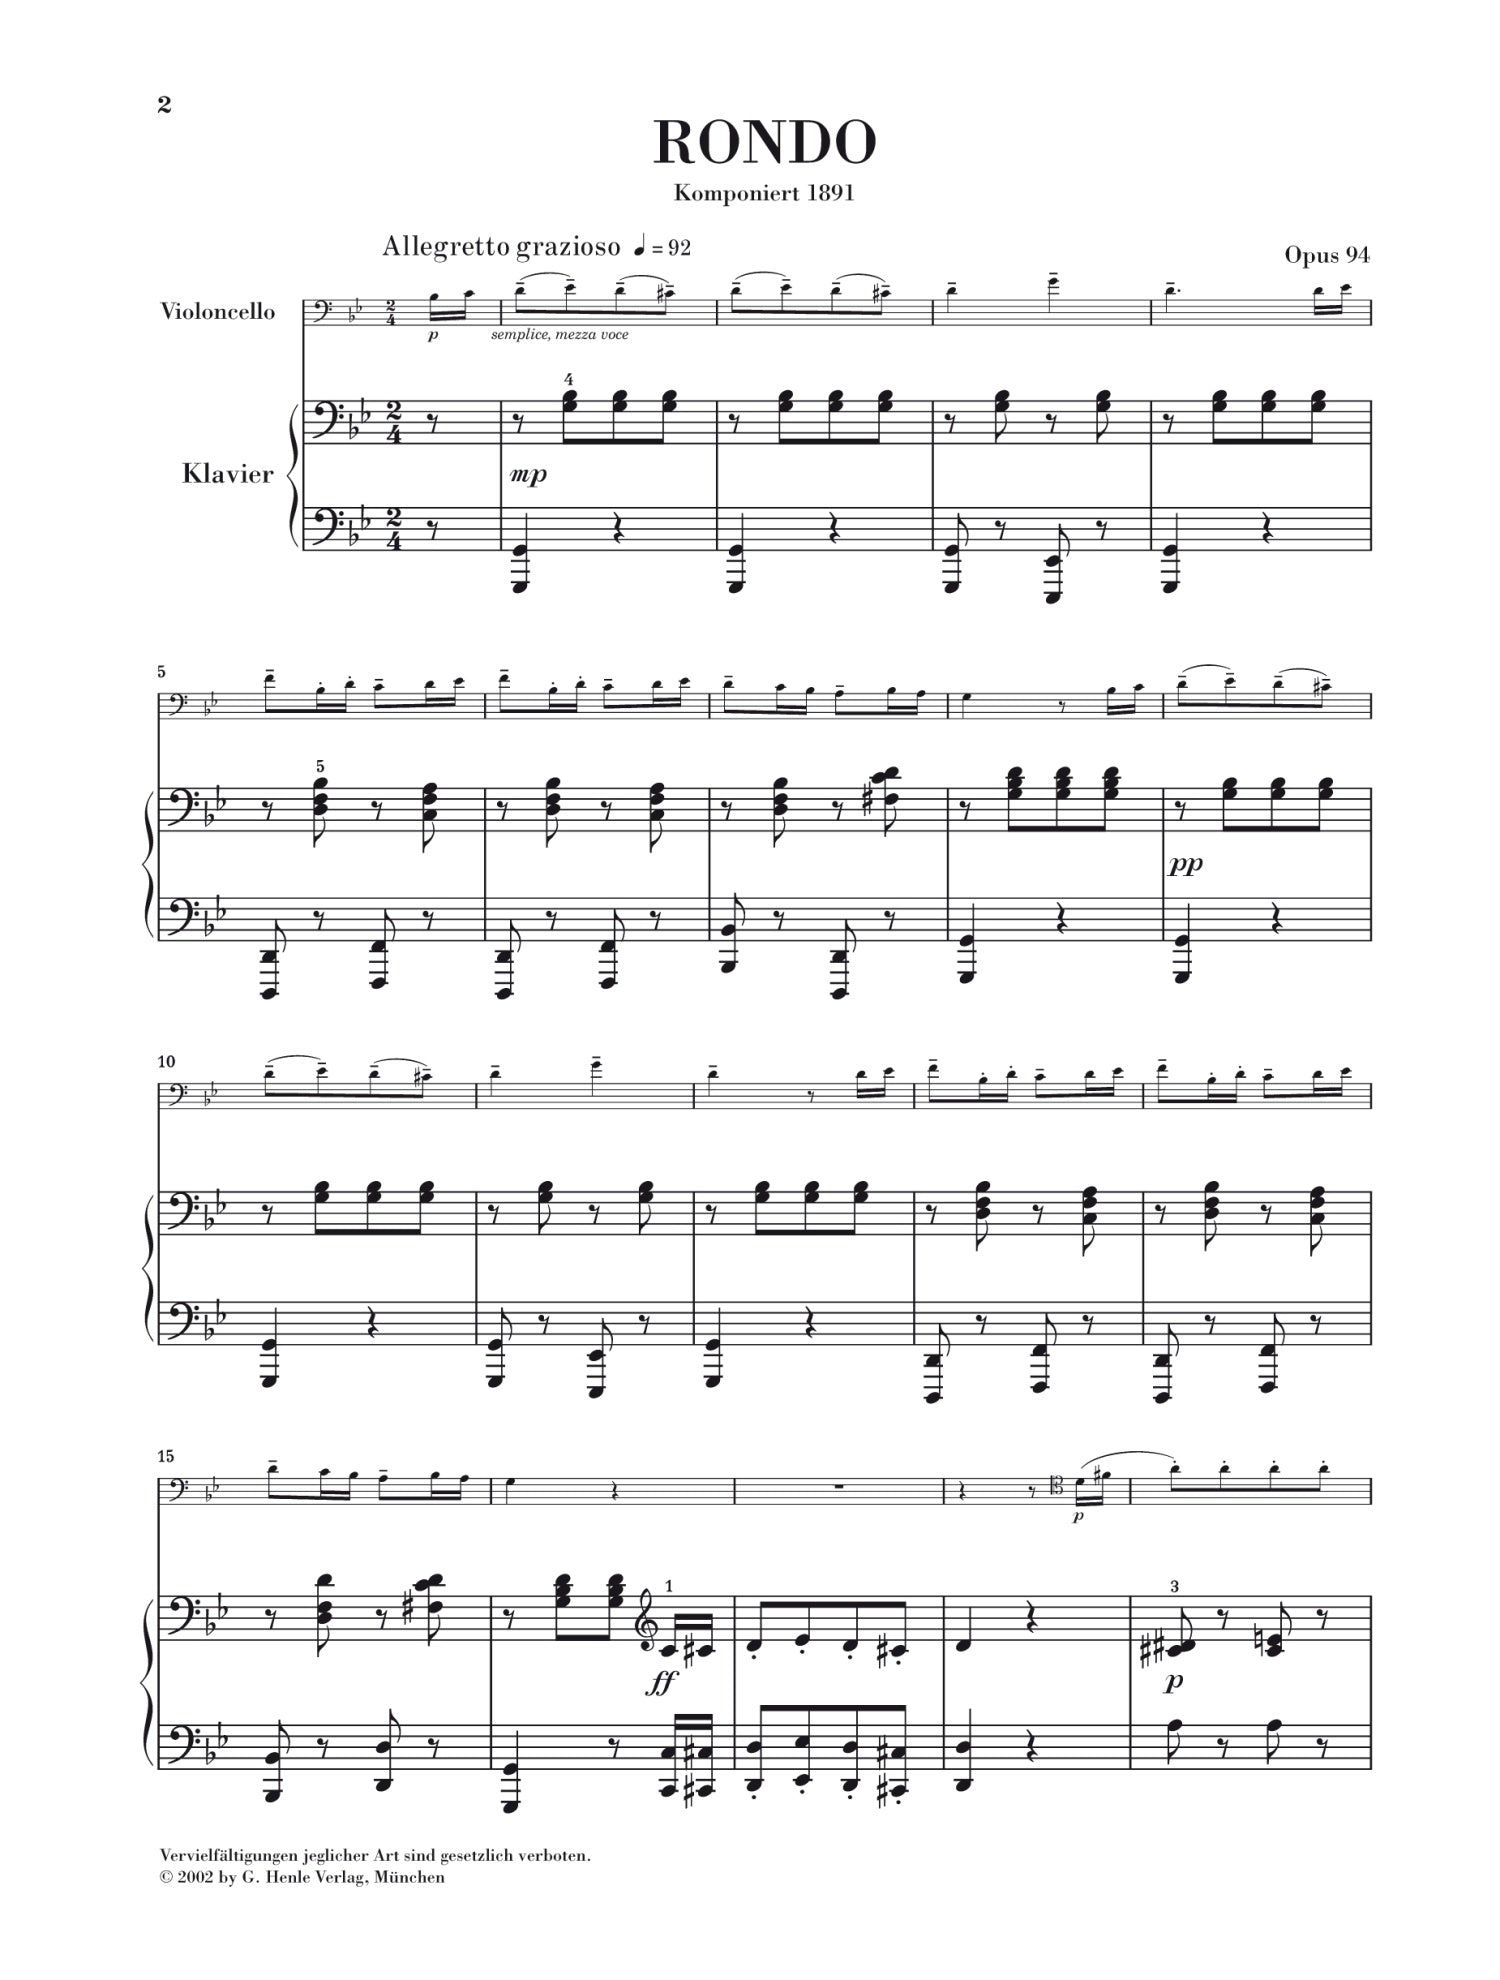 Dvorak: Rondo for Cello & Piano in G Minor Op 94